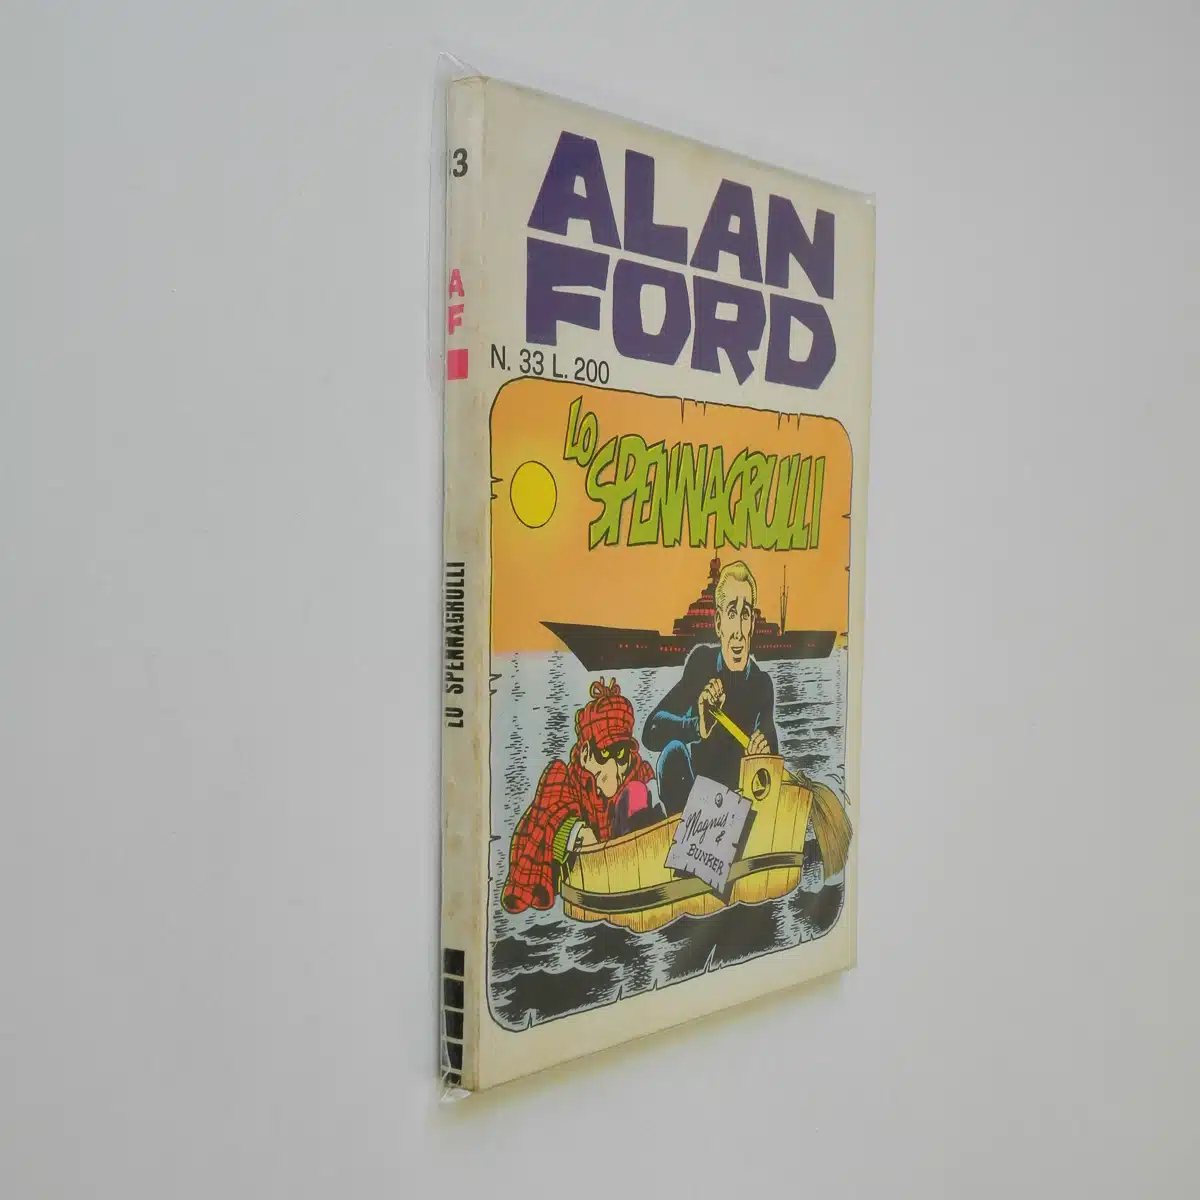 Alan Ford n. 33 Lo spennagrulli